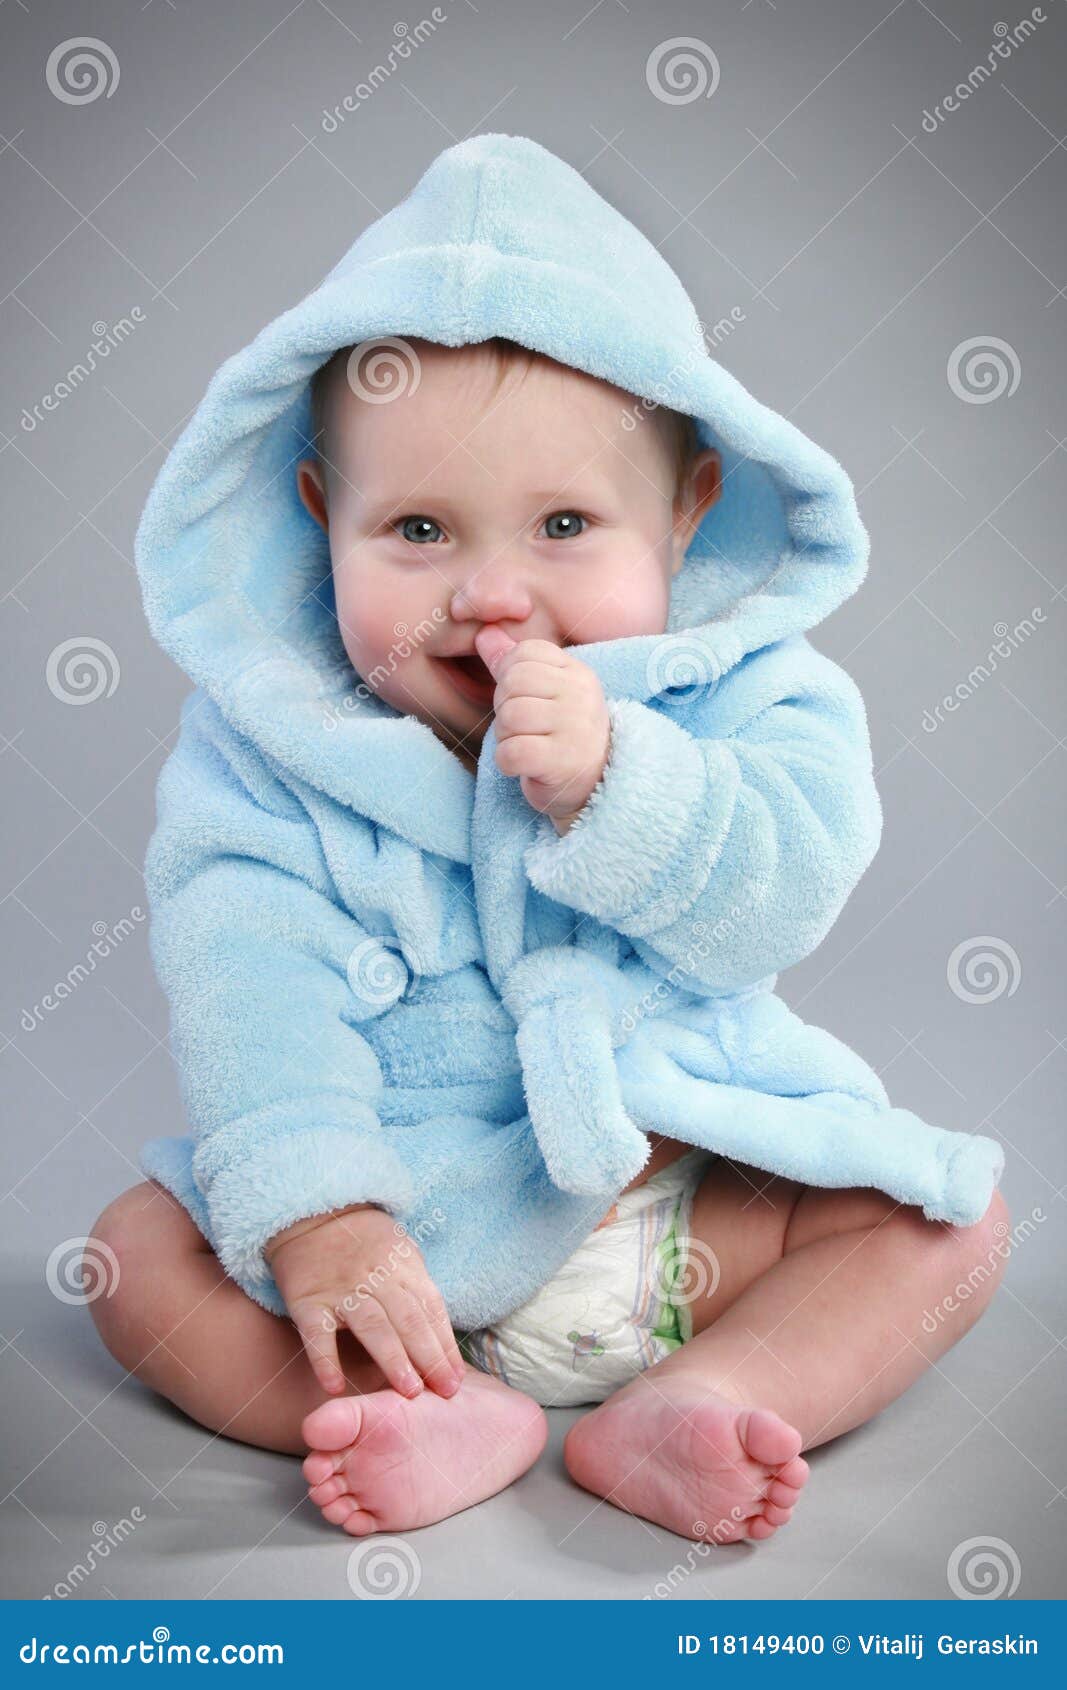 charming baby in a blue bathrobe